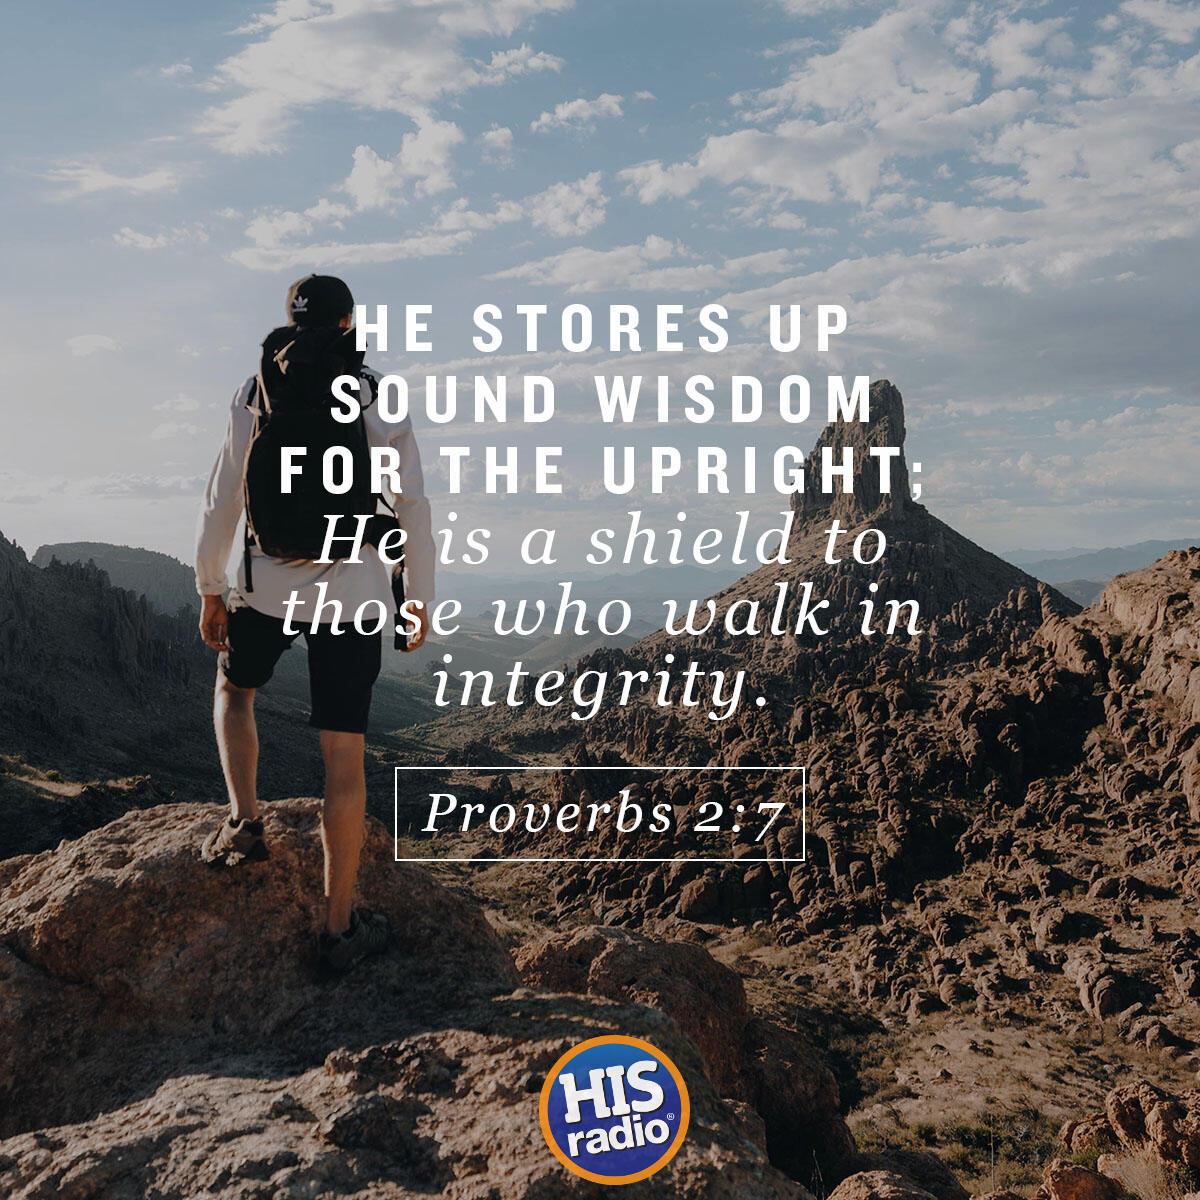 Proverbs 2:7